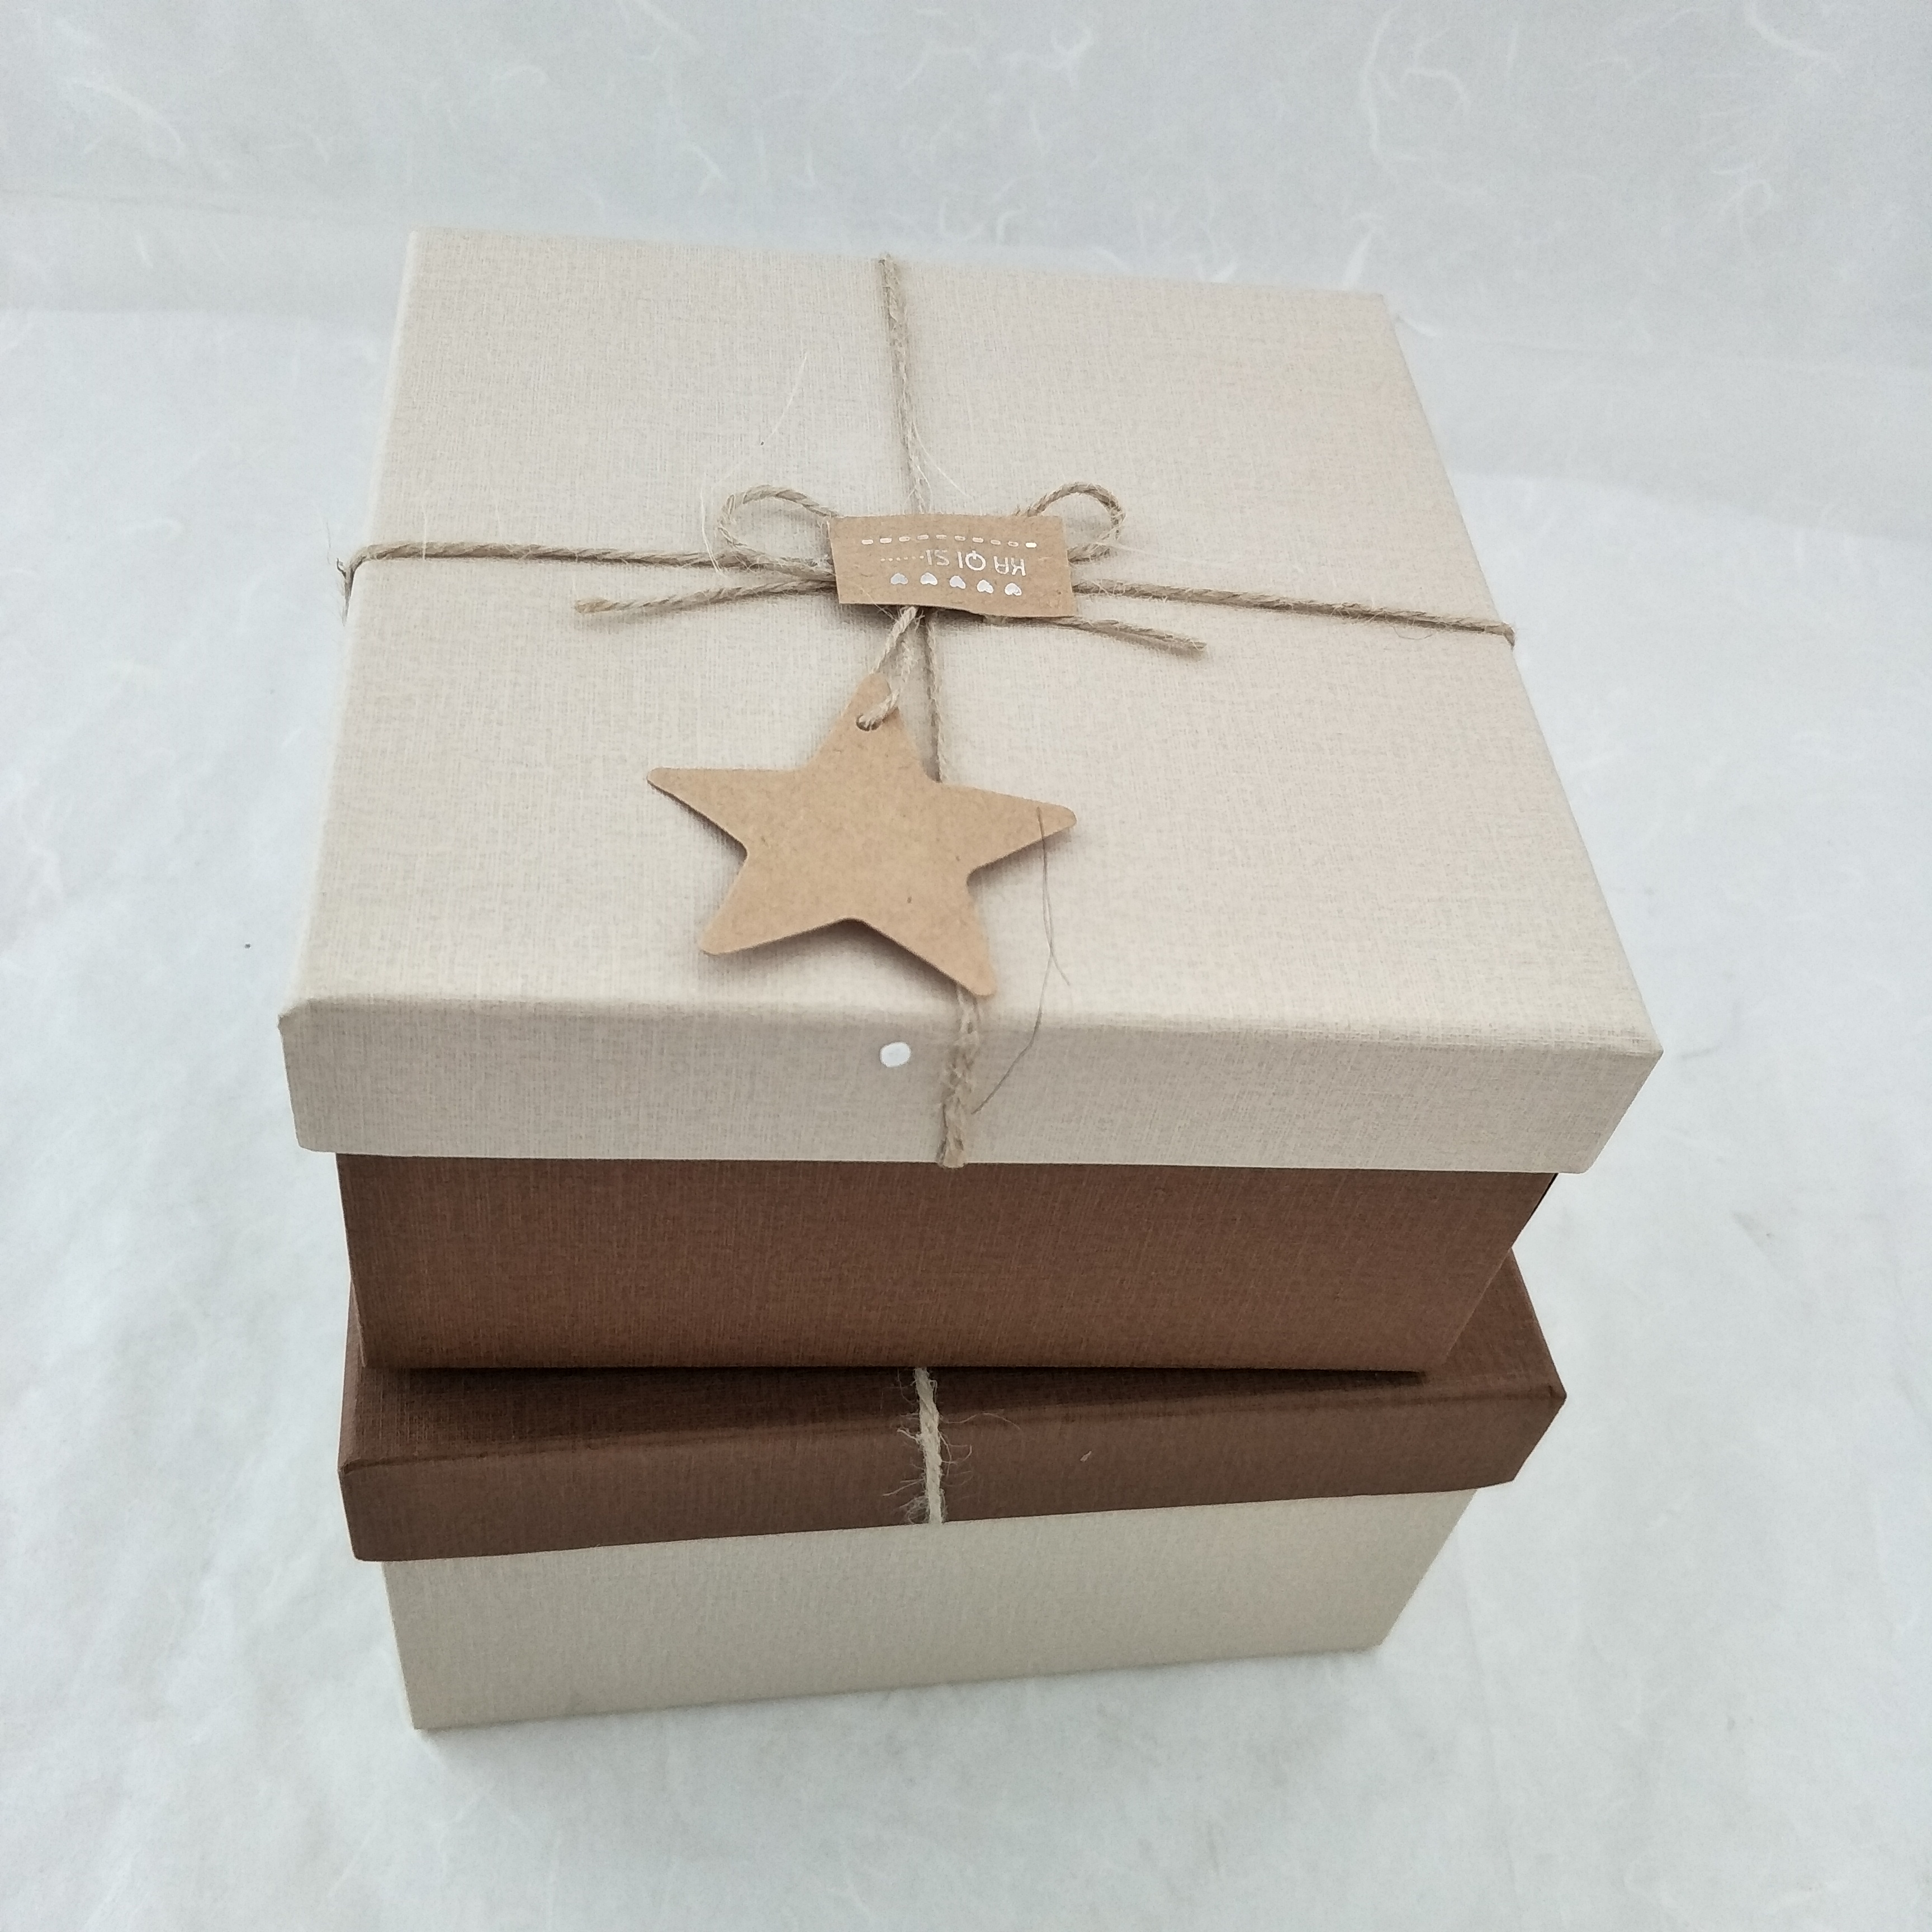 简约麻绳正方形情人节礼物包装盒 化妆品包装盒 生日礼物包装盒 首饰包装盒 手表包装盒